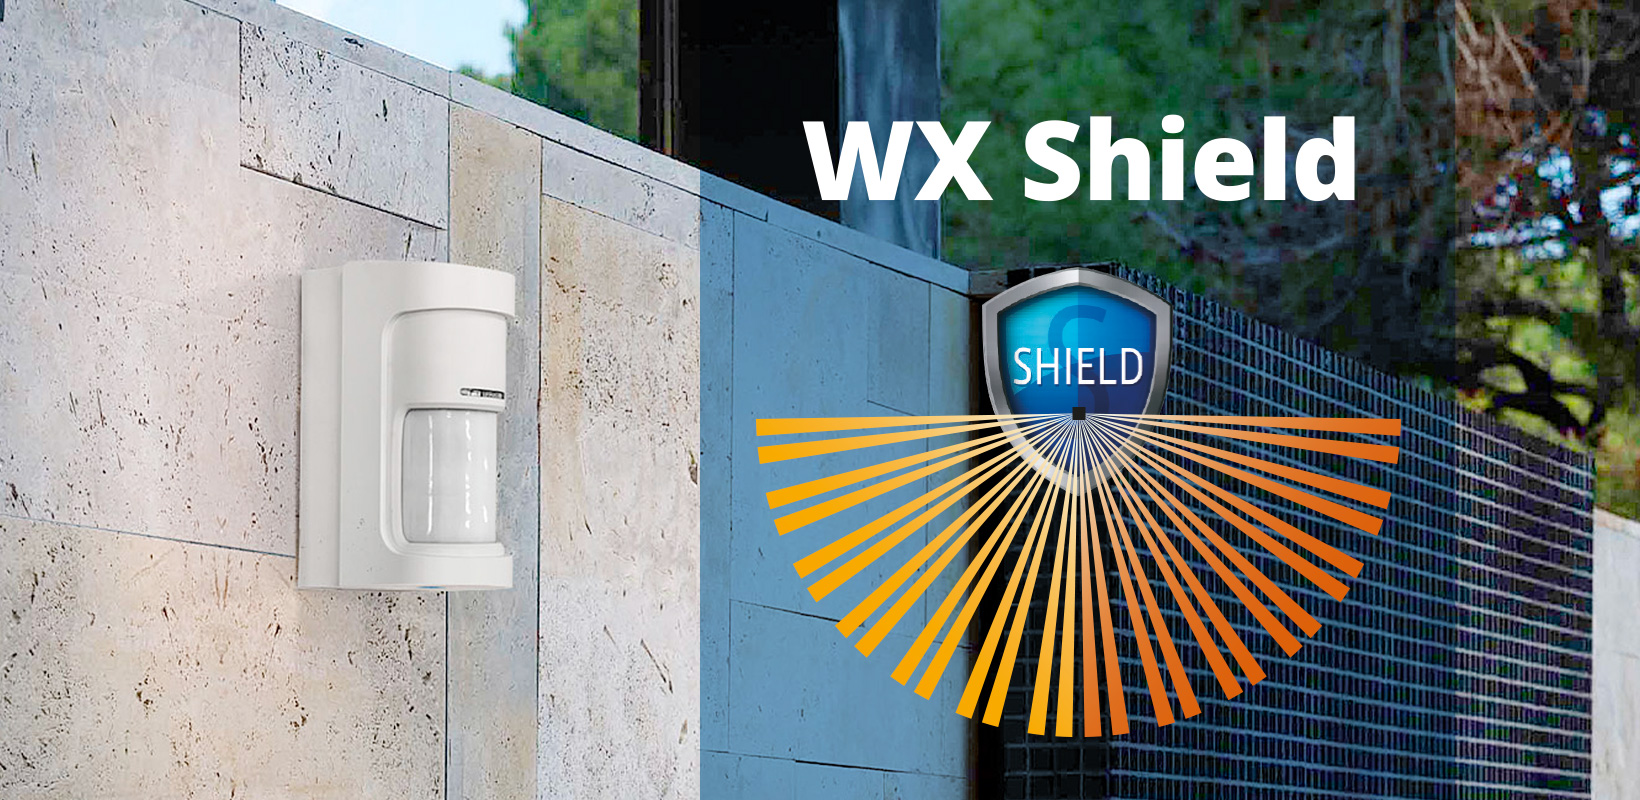 Панорамные уличные извещатели WX Shield